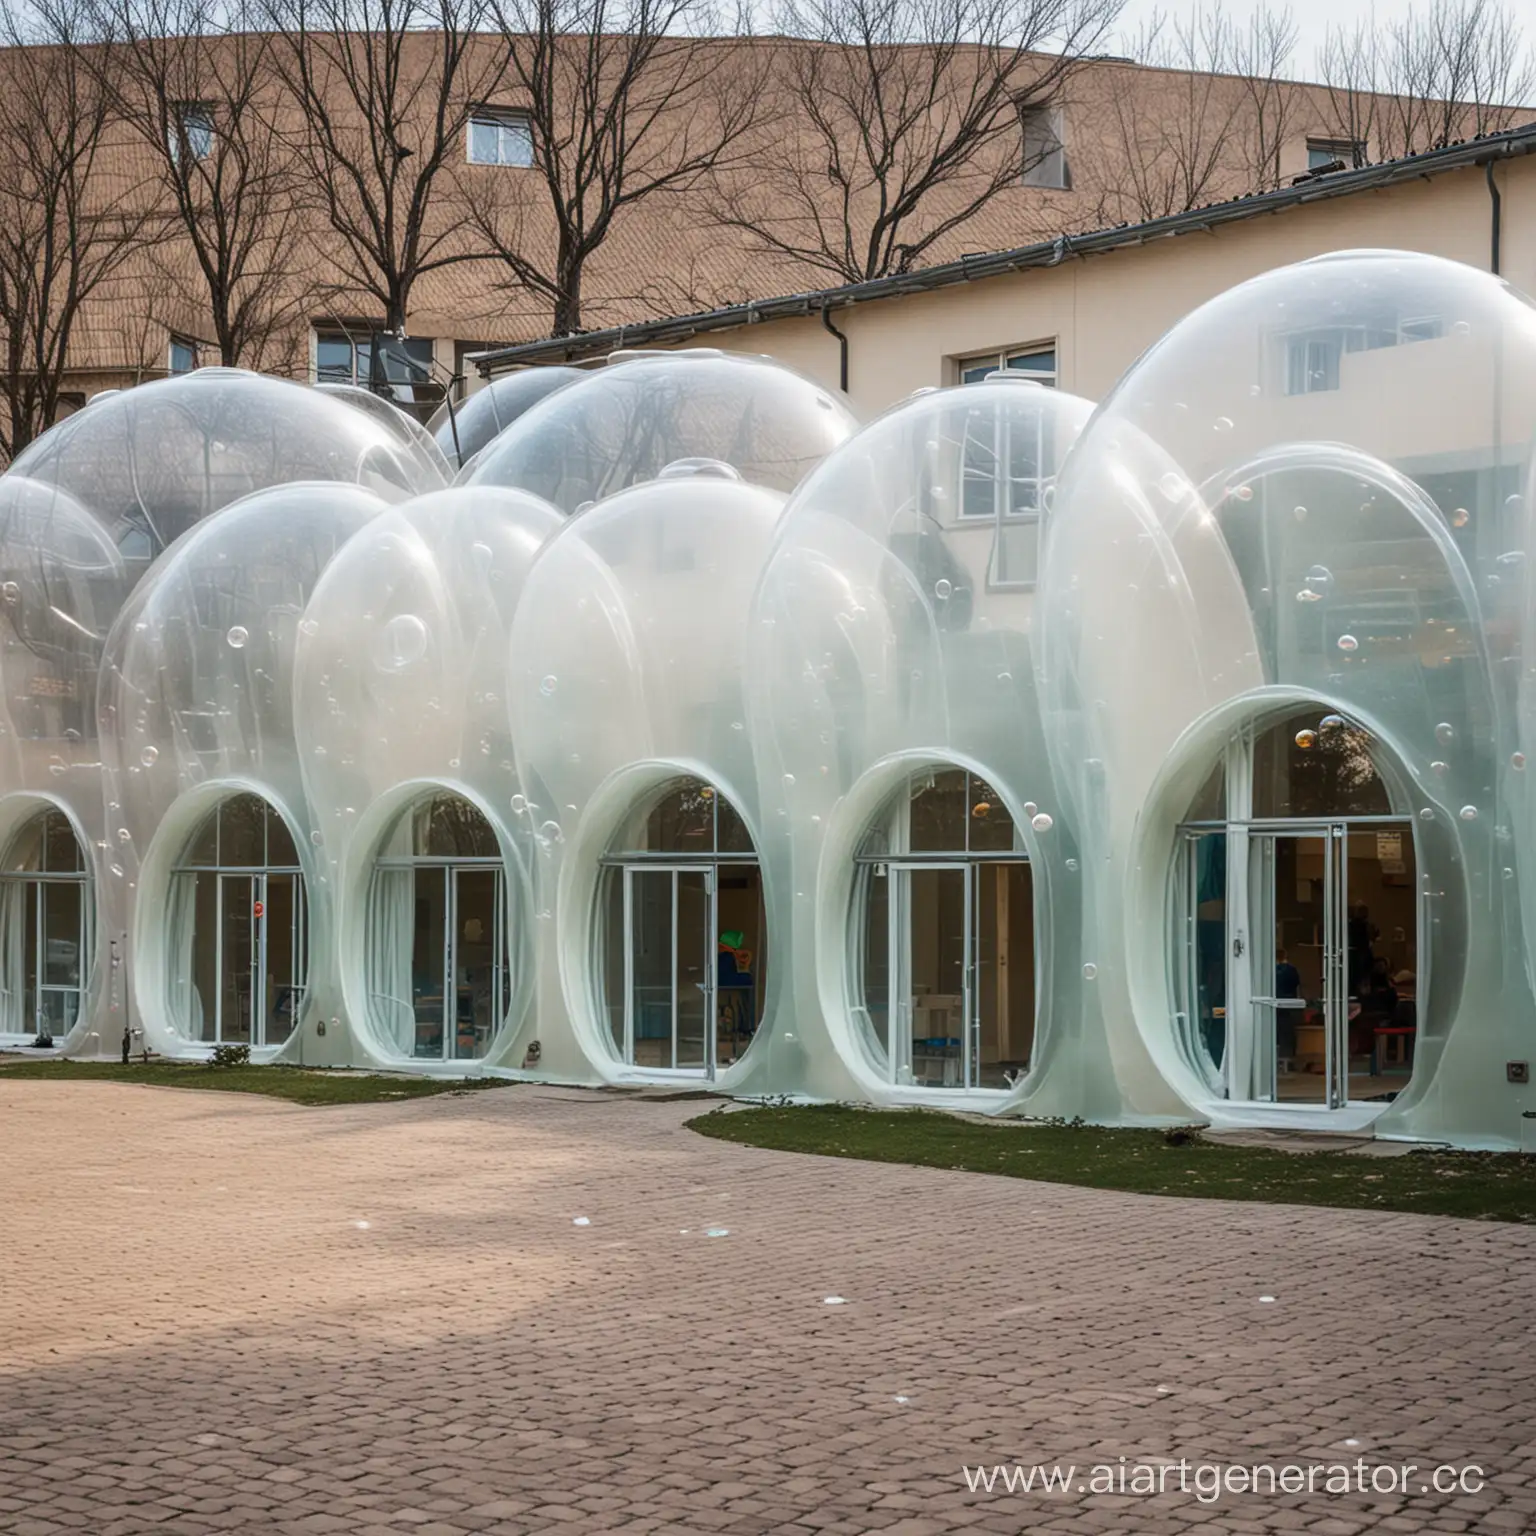 здание детского сада в форме мыльных пузырей